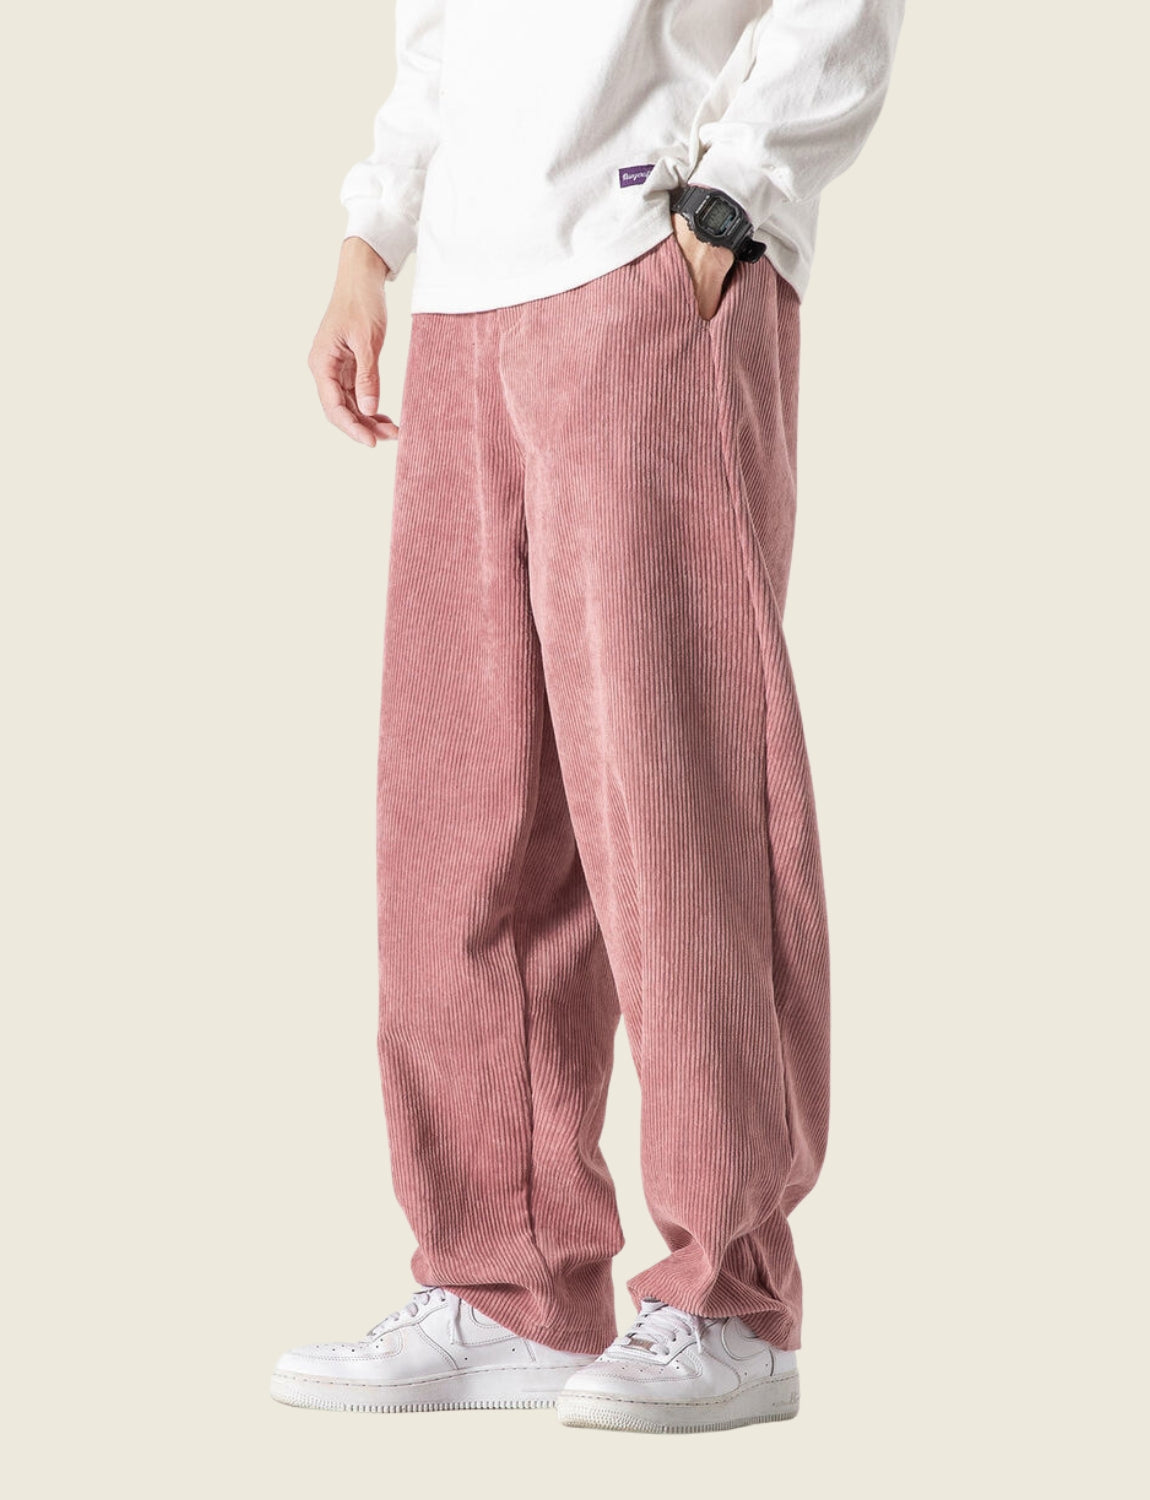 Corduroy Tie Dye Baggy Pants Streetwear Pants Pink Tie-dye Loose